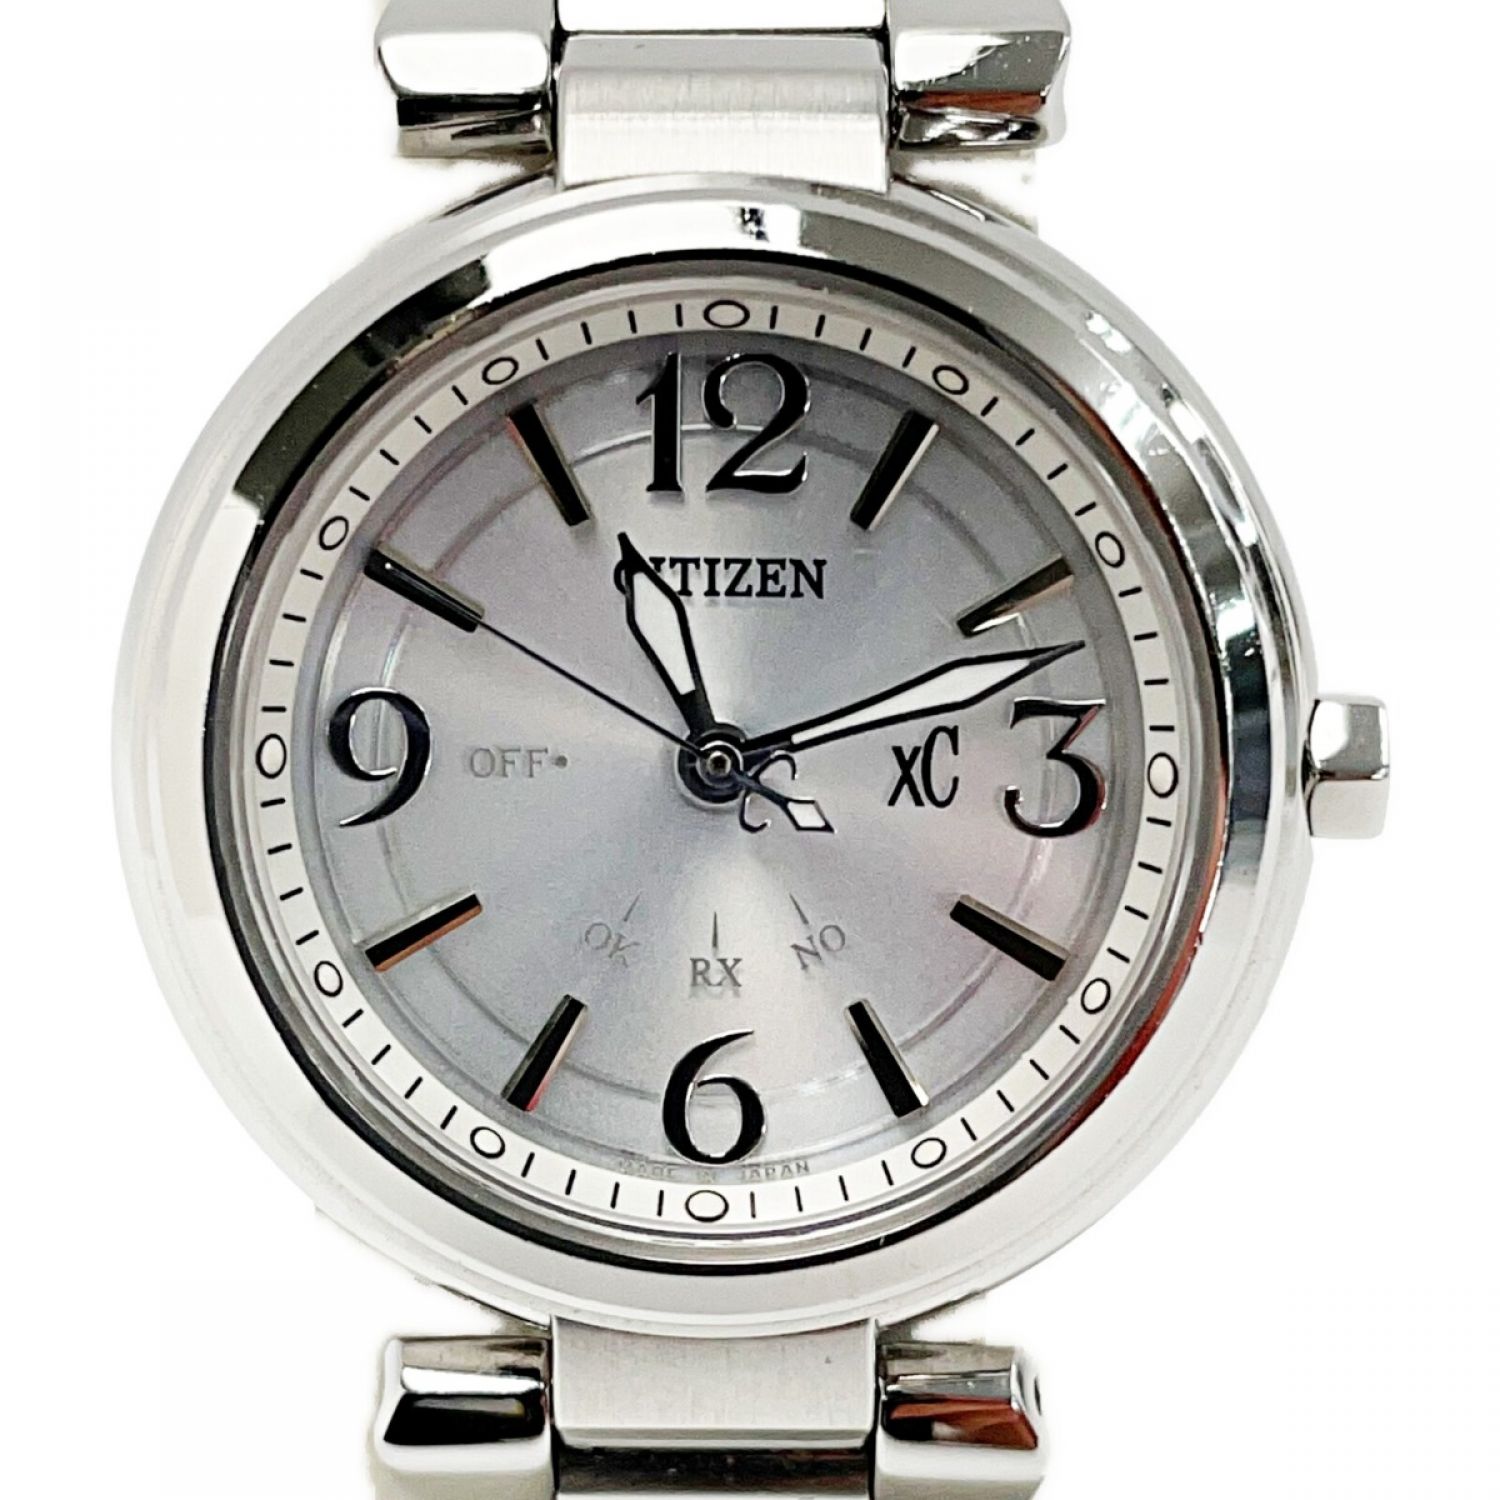 CITIZEN【AW1241-54A】腕時計 シルバー エコ・ドライブ